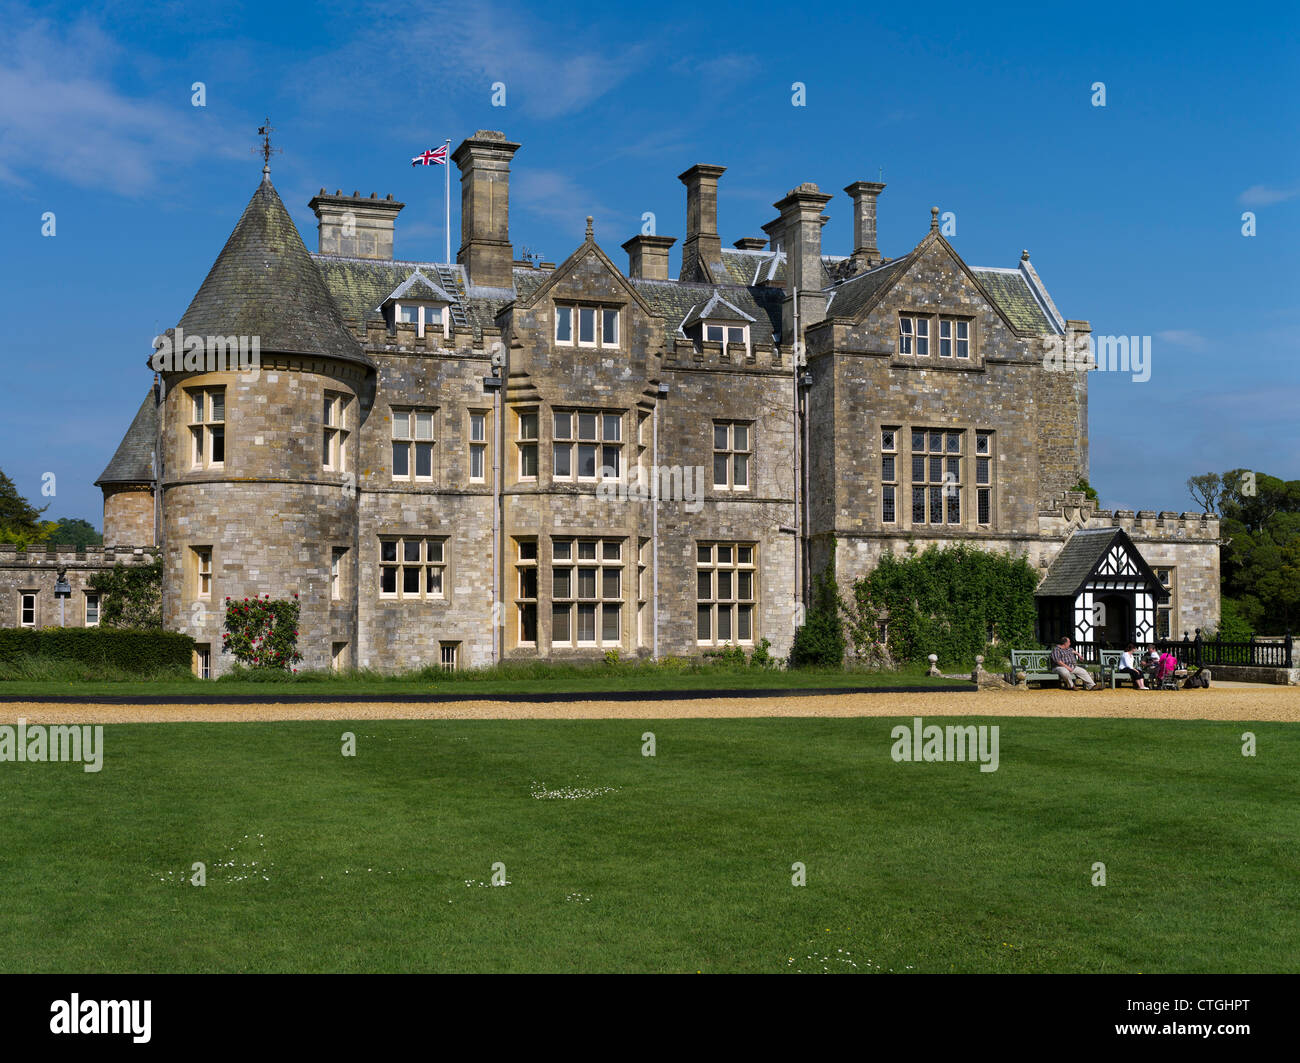 dh Maison de Lord Montagu BEAULIEU PALACE HAMPSHIRE UK Mansion maison estate royaume-uni grand vieux pays Banque D'Images